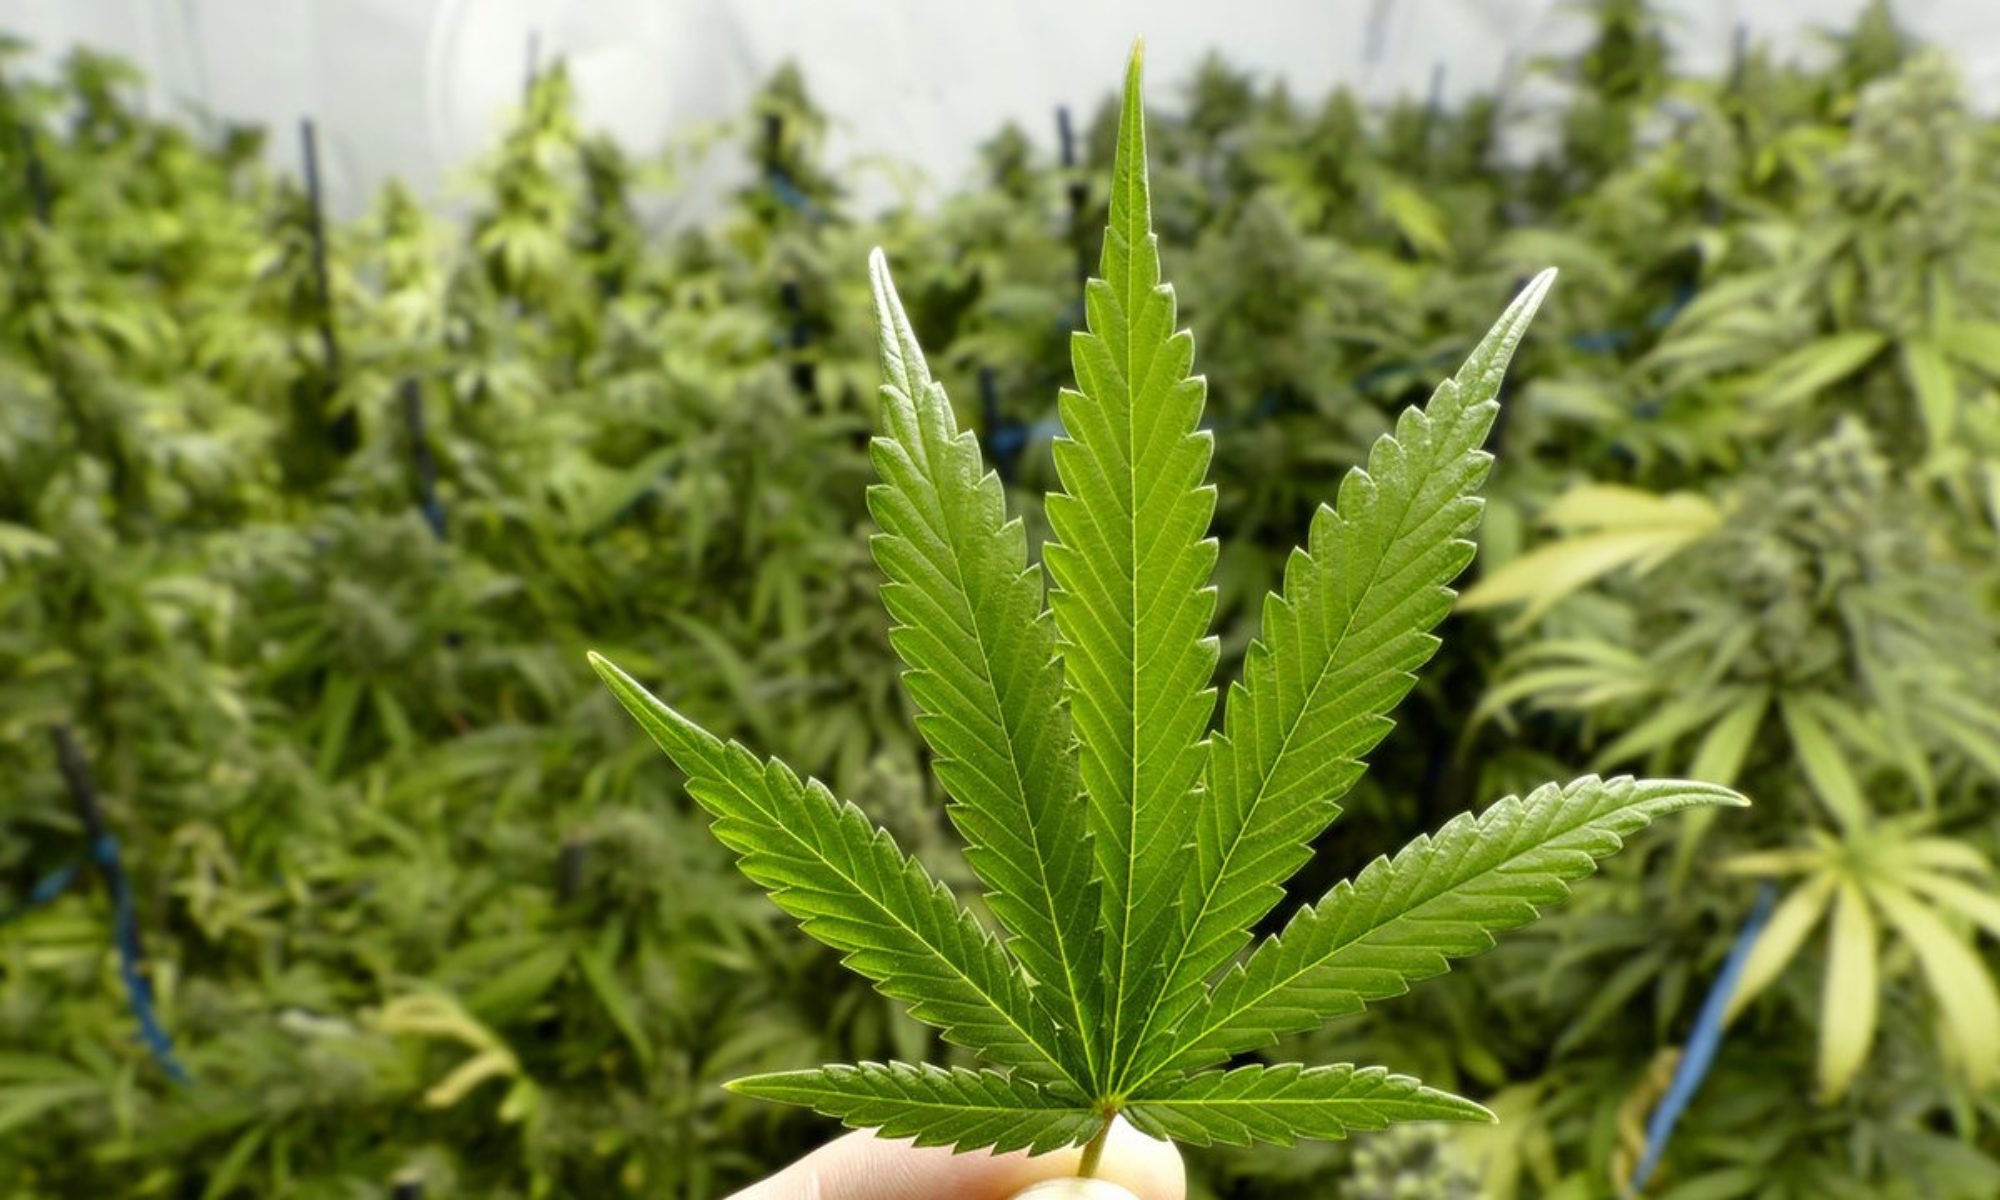 Regular Cannabis Seeds